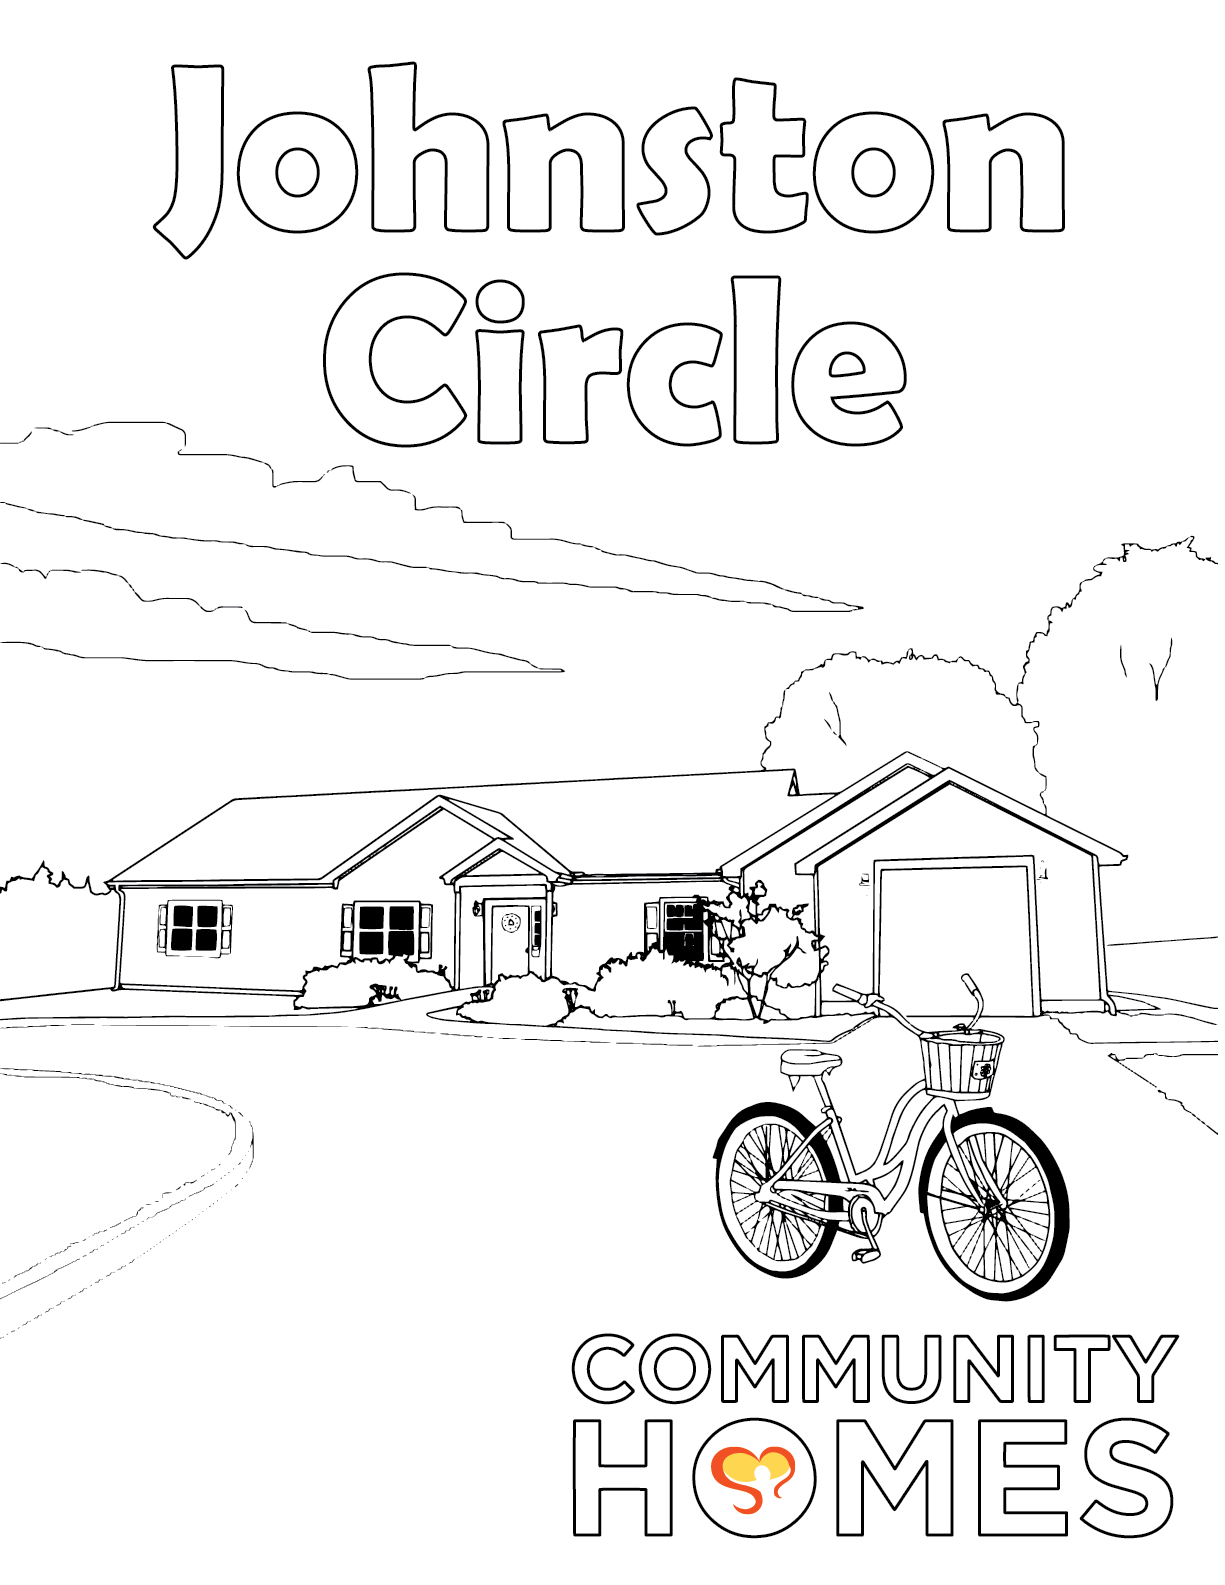 Johnston Circle 2x png CjQKF20O - Johnston Circle and Kelly Corners - Fun Art Friday